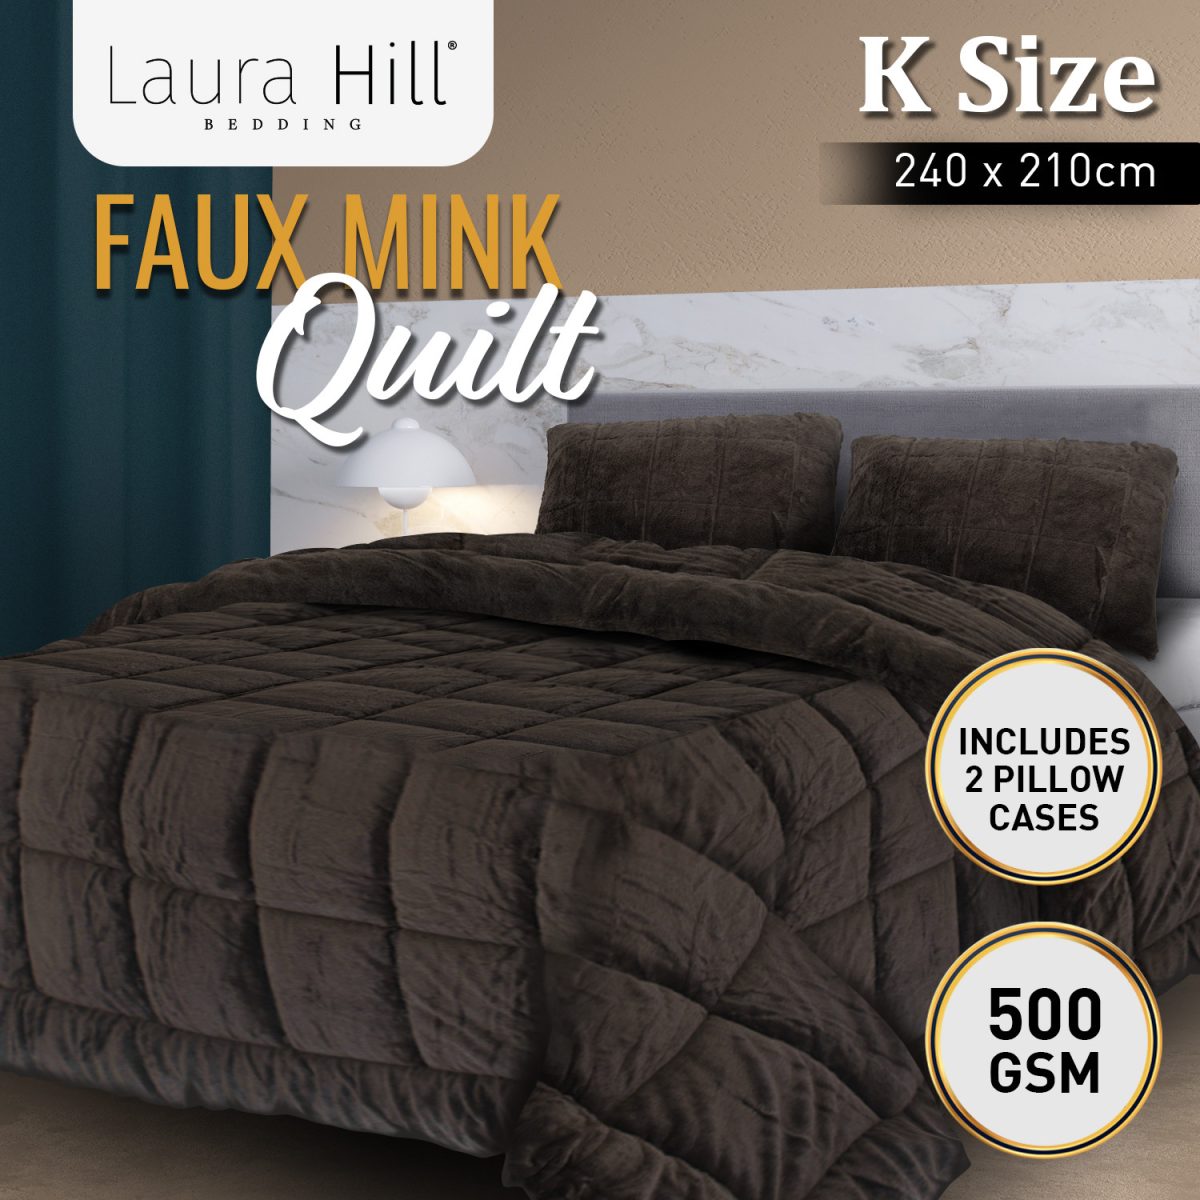 Laura Hill 500GSM Faux Mink Quilt Comforter Doona – King